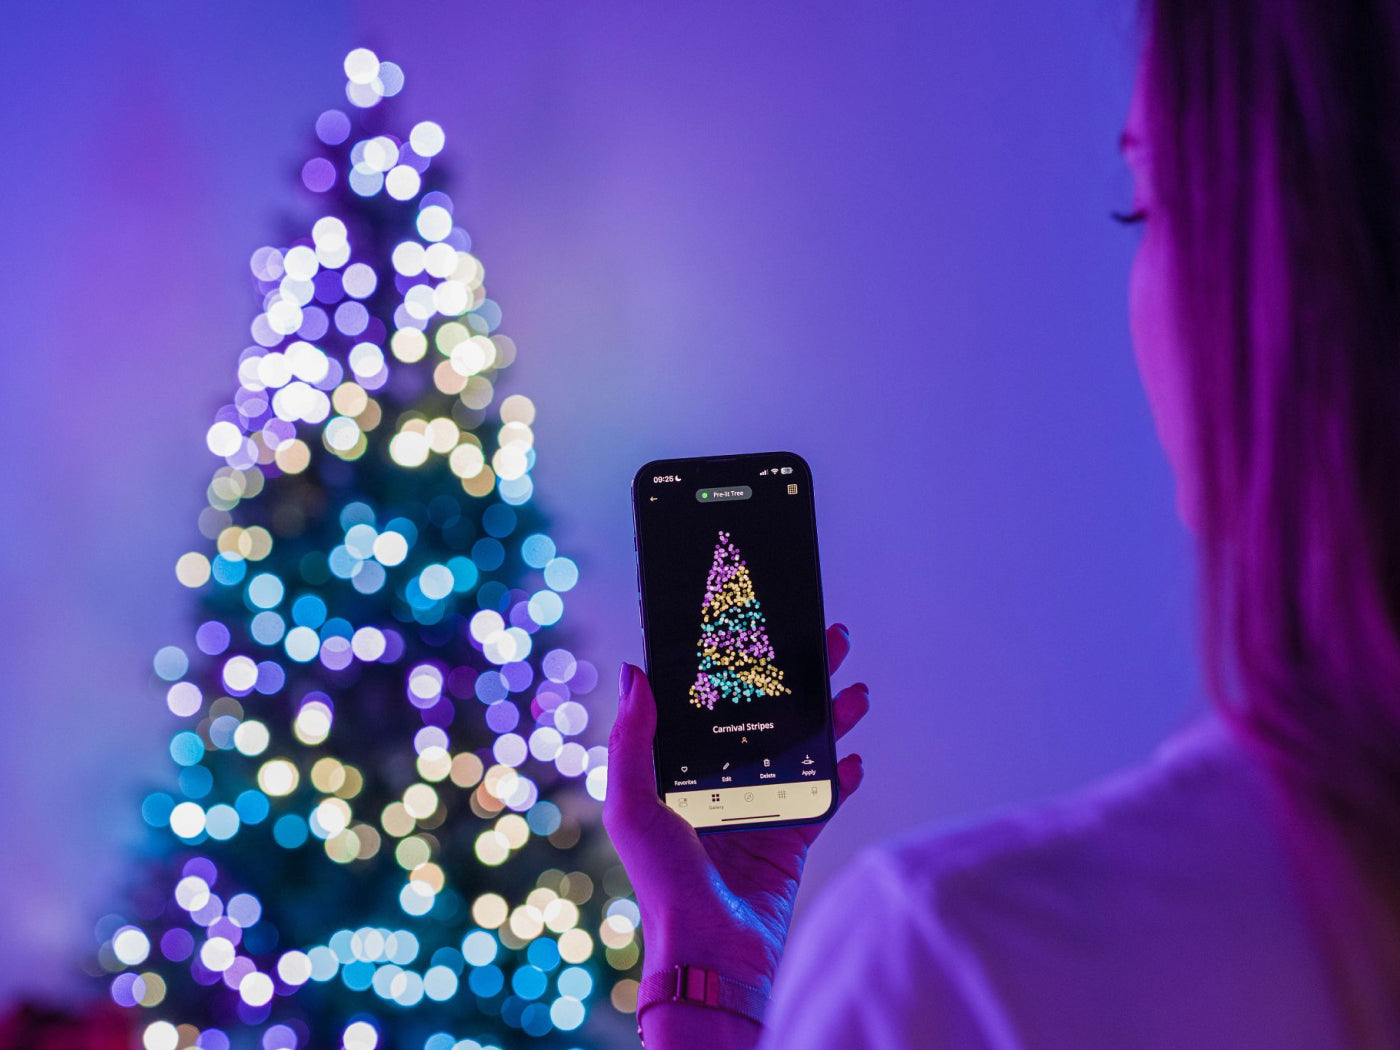 Hang your Christmas tree lights like a pro